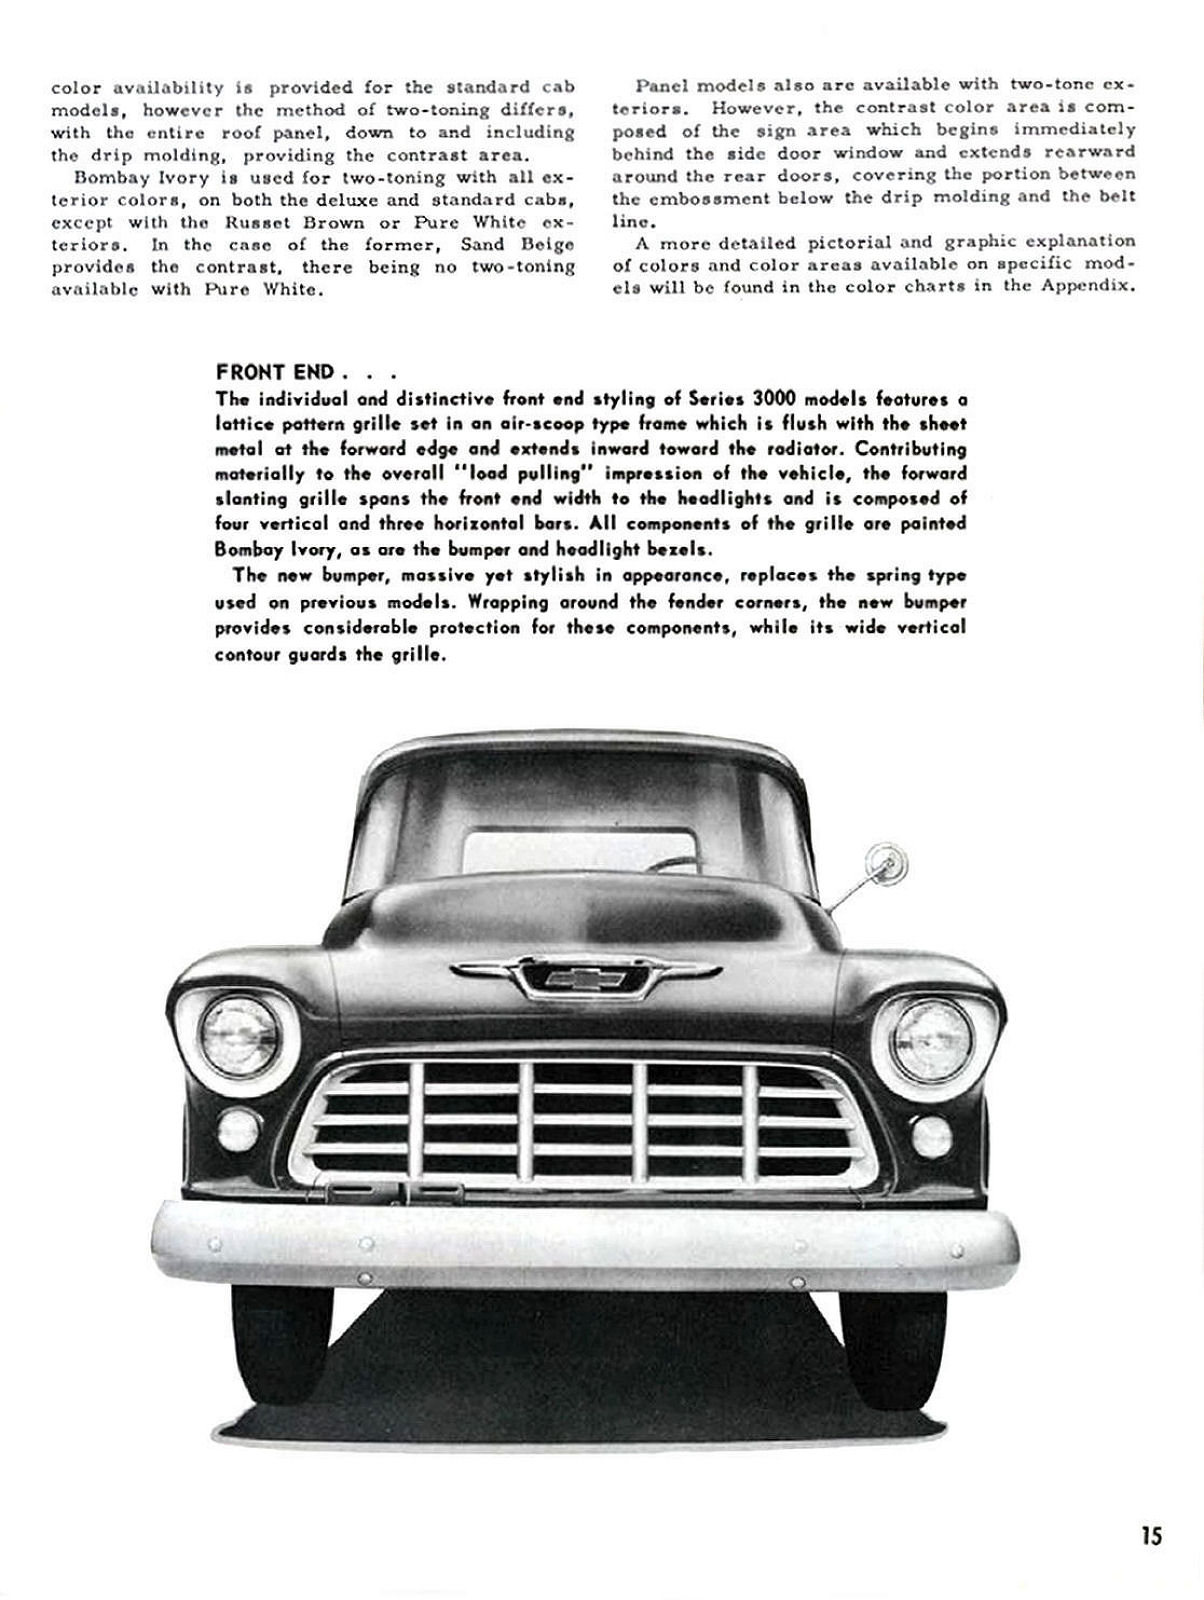 1955_Chevrolet_Truck_Engineering_Features-015